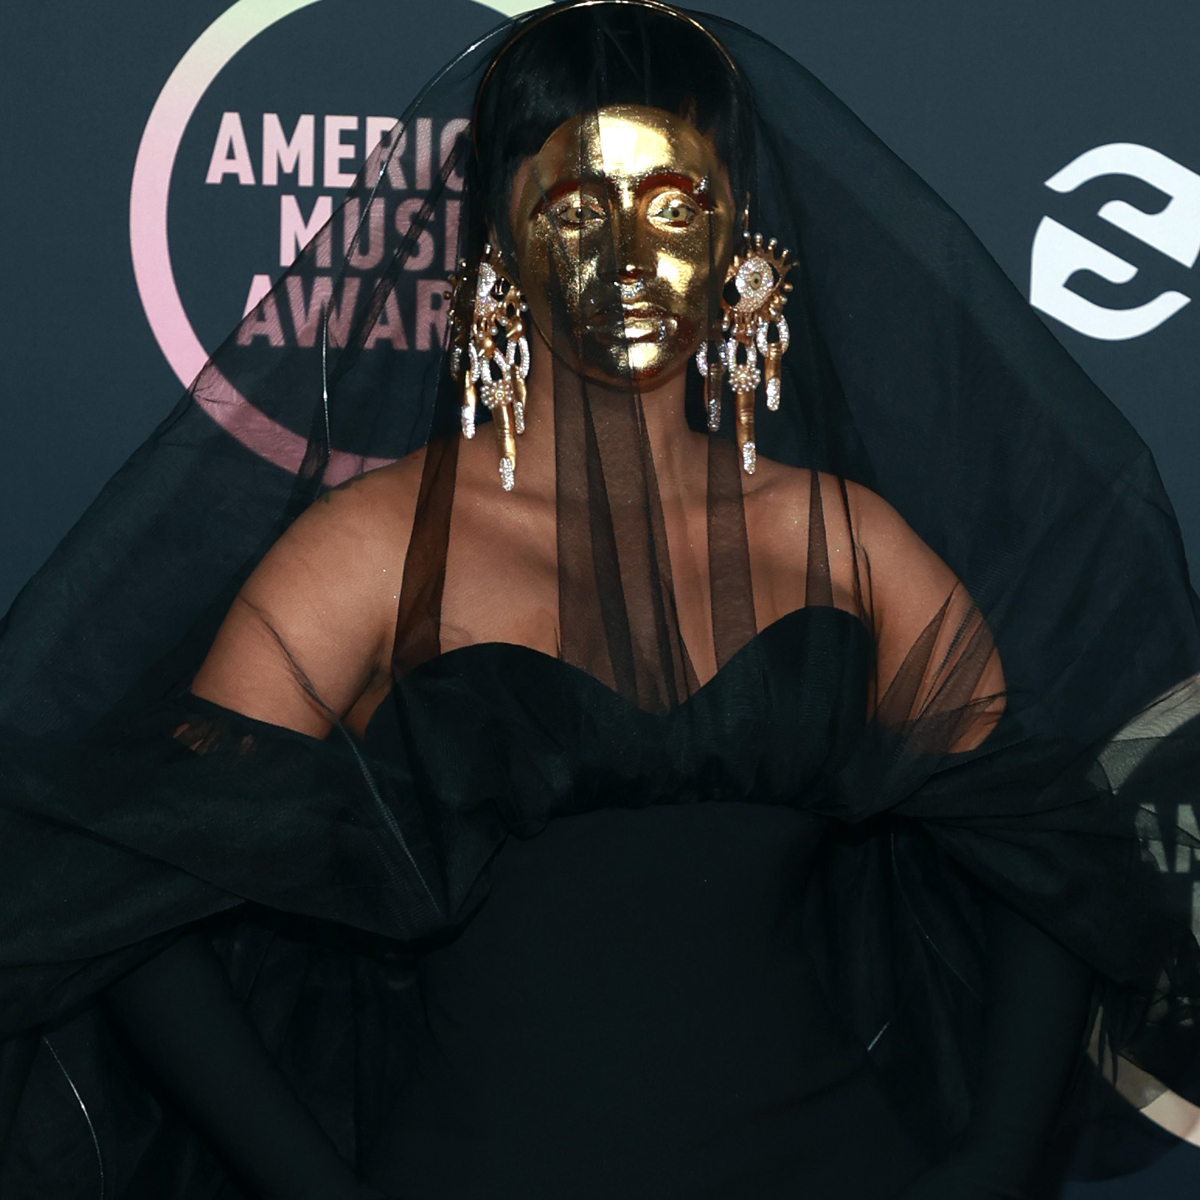 Cardi B 2021 American Music Awards Fashion, Photos, Details – WWD